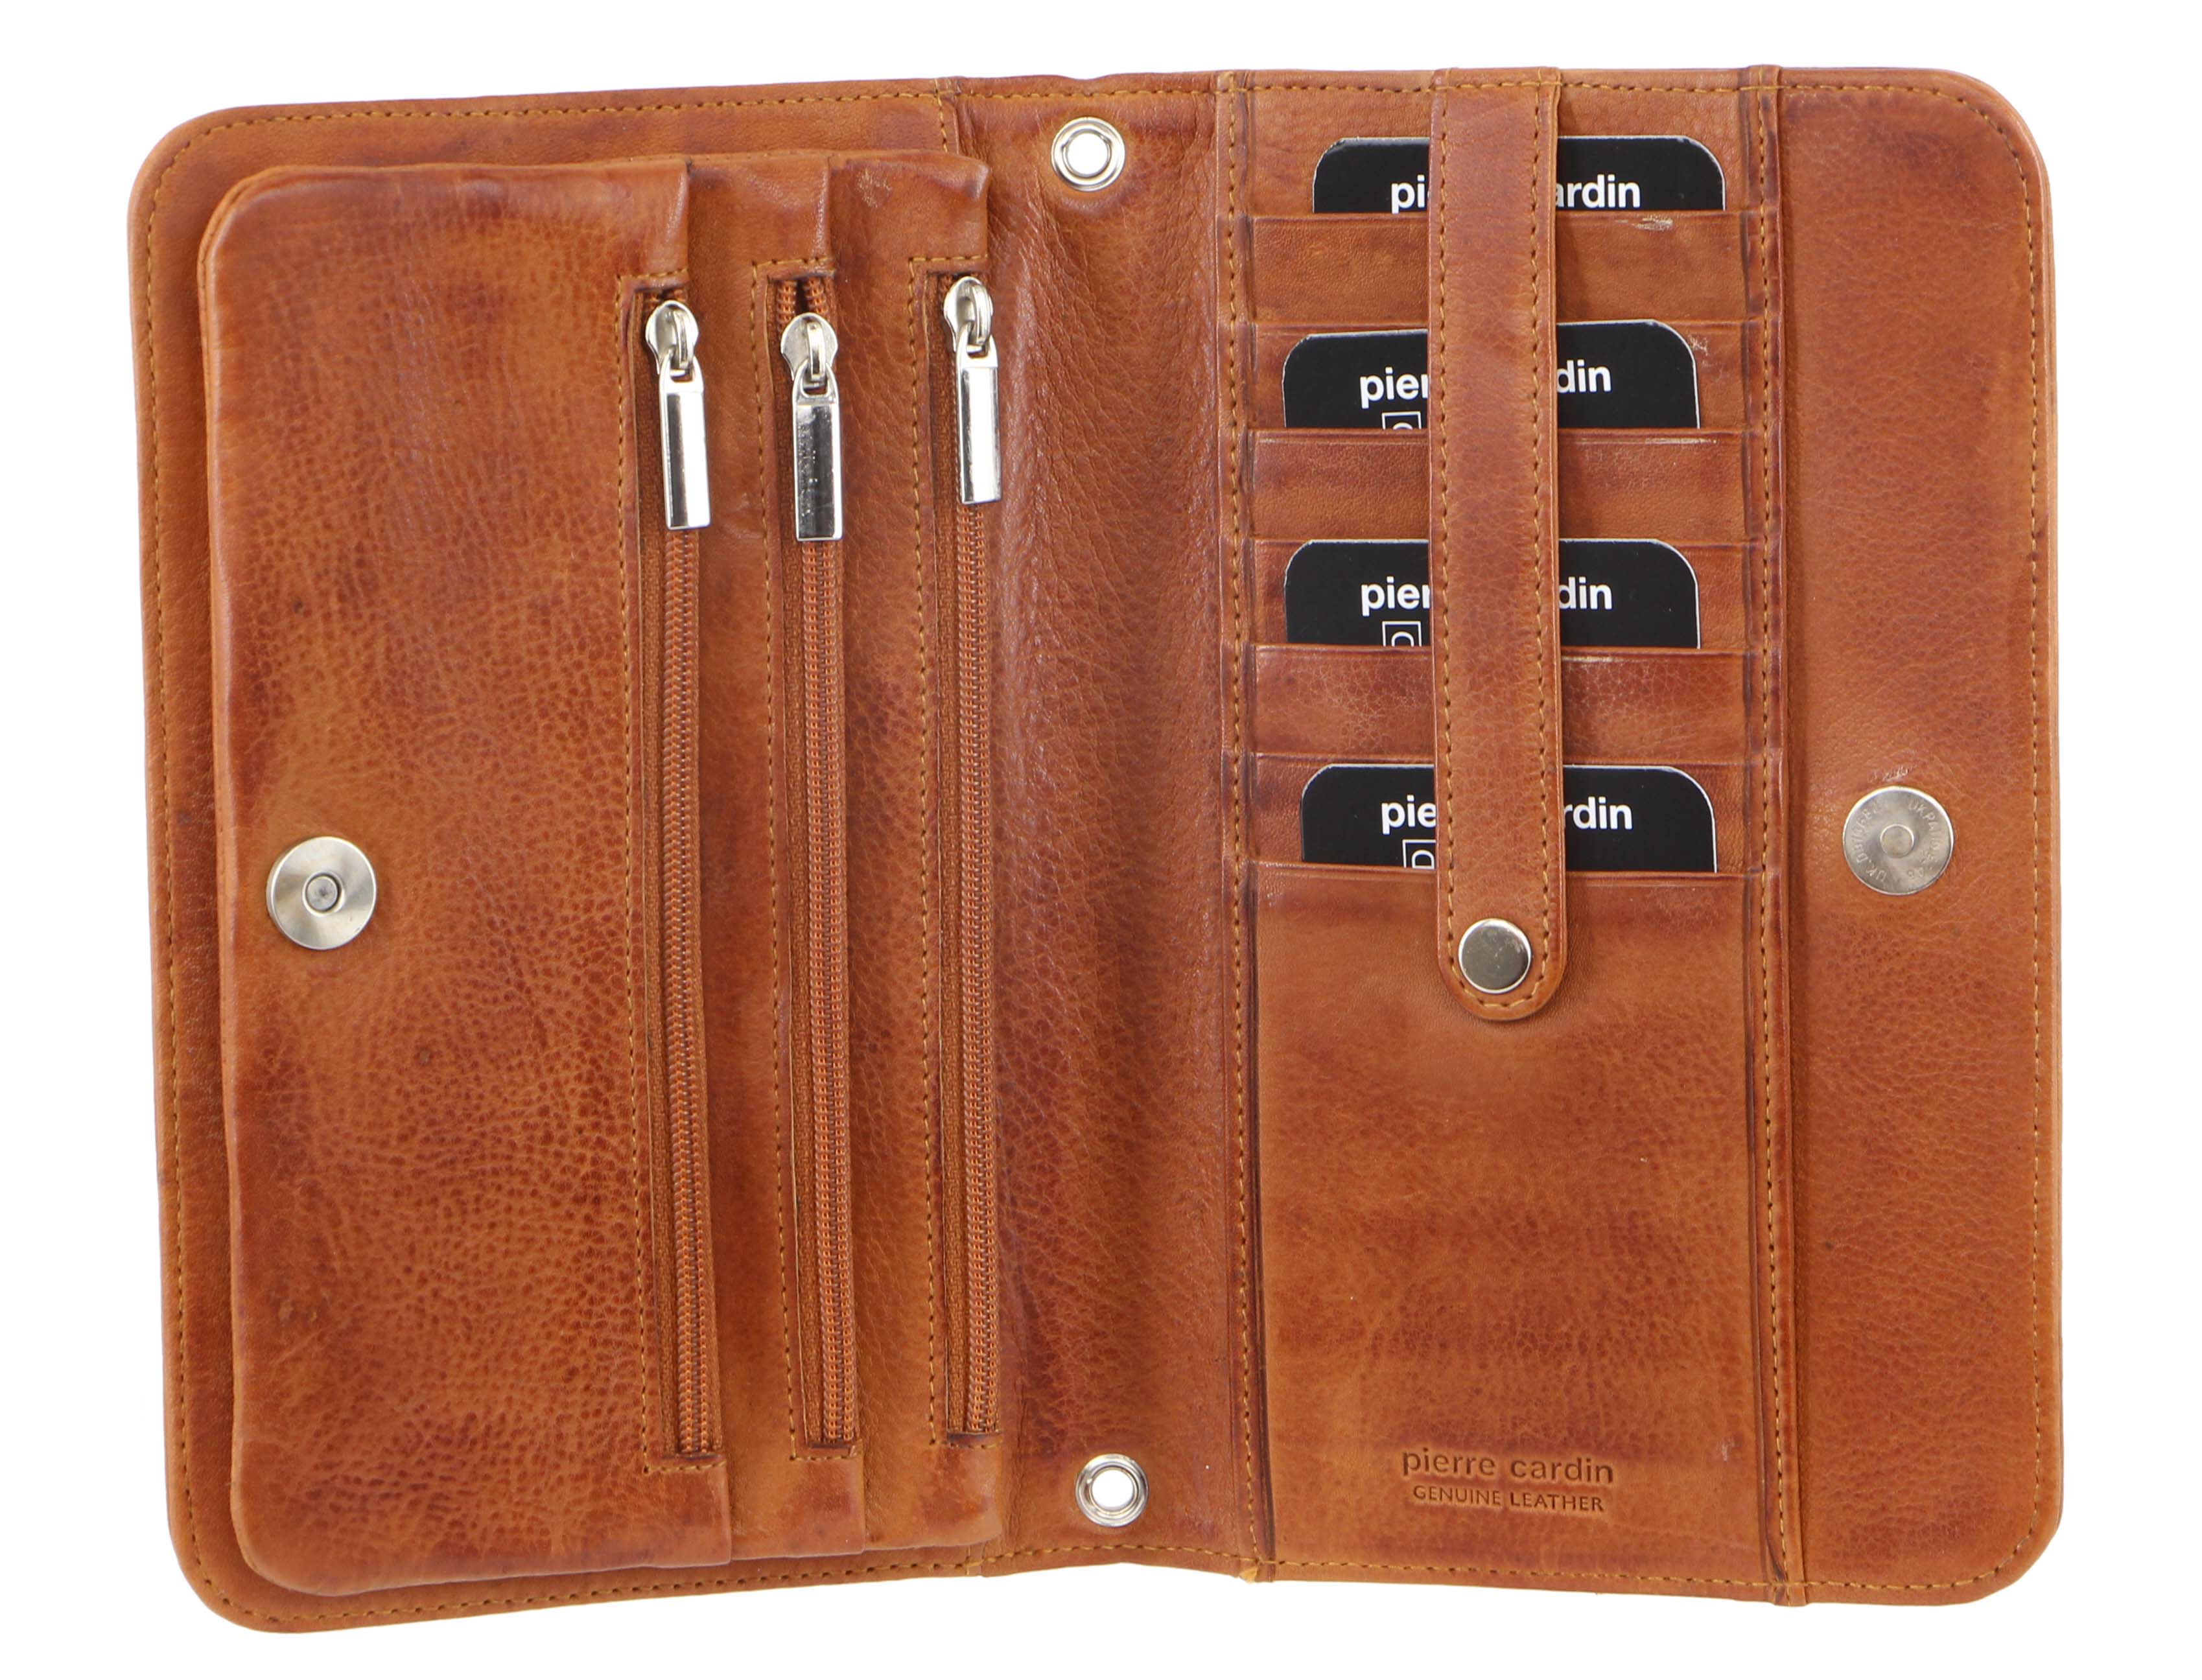 Pierre Cardin Genuine Leather Clutch/Wallet Bag in Cognac